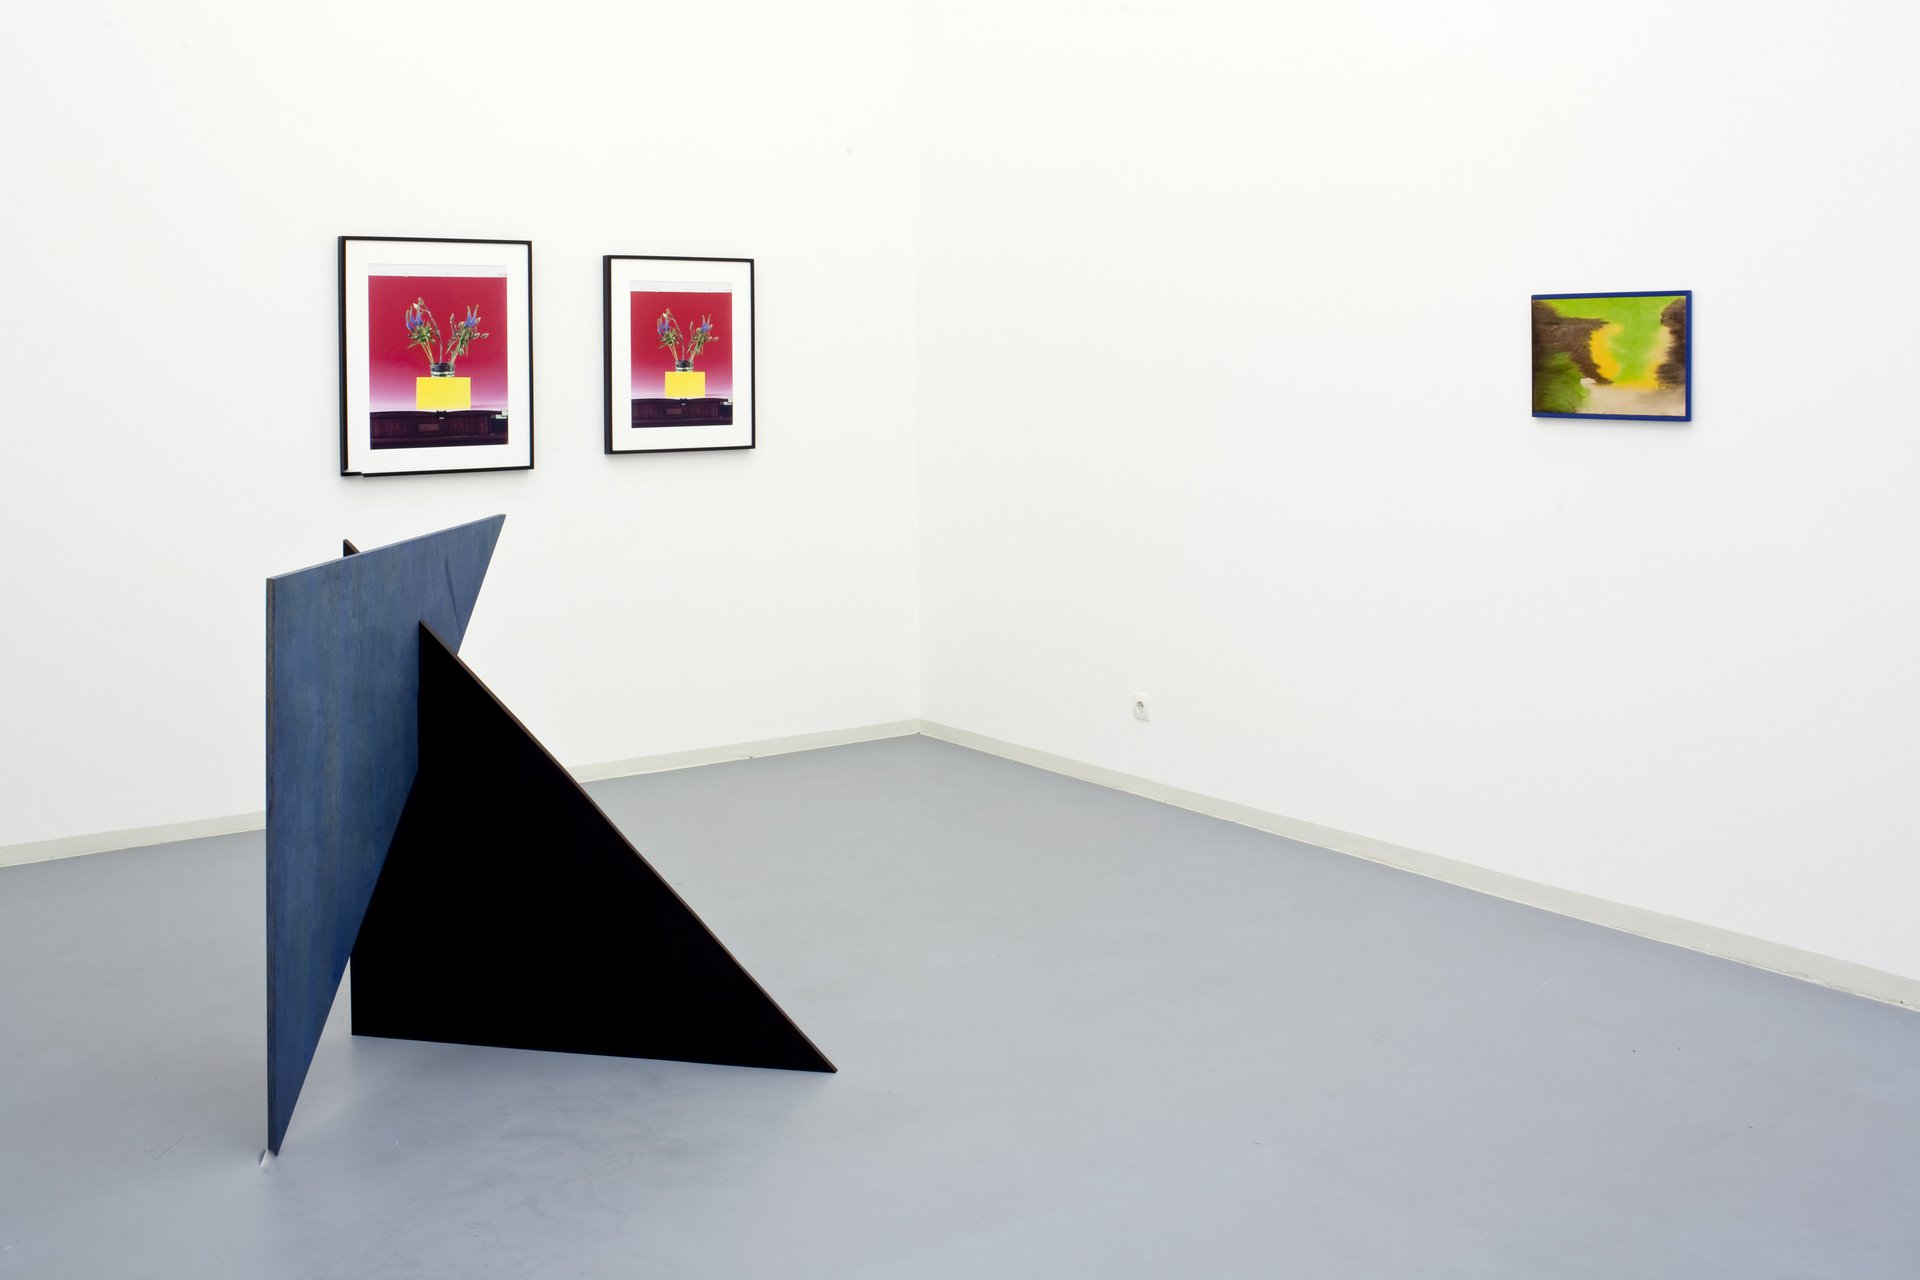 Annette Kelm &amp; Michaela Meise, Hallo aber, Installation view, Bonner Kunstverein, 2011. Photo: Simon Vogel.